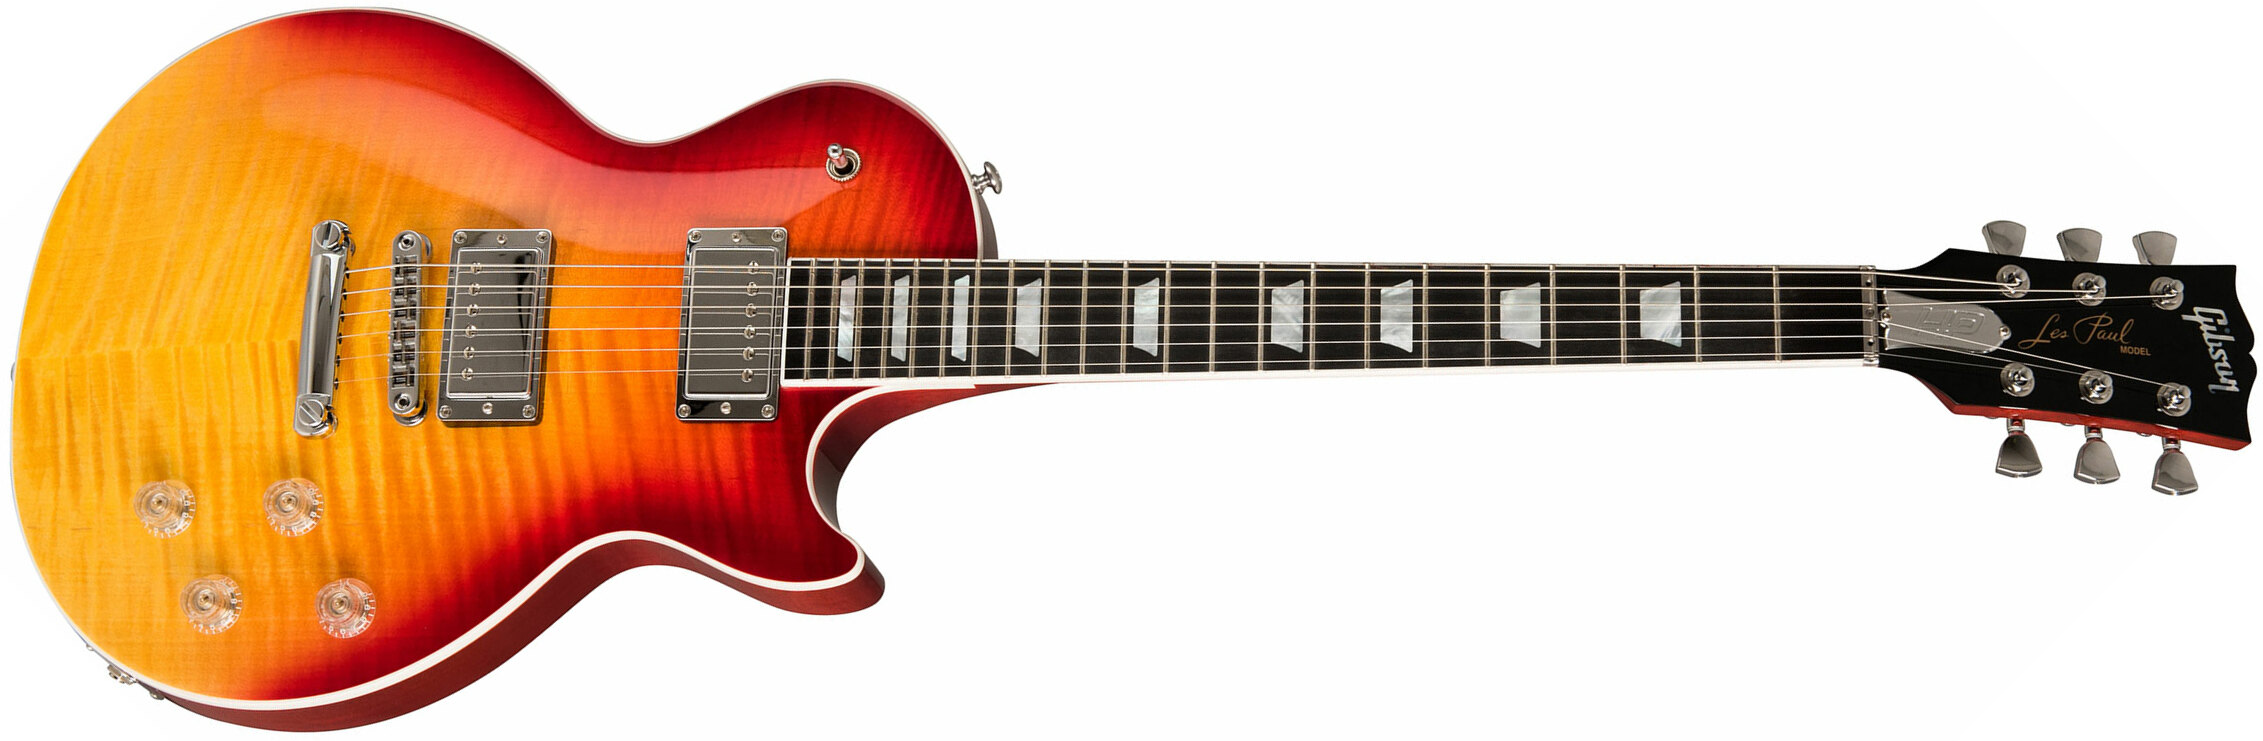 Gibson Les Paul Hp-ii High Performance 2019 2h Ht Ric - Heritage Cherry Fade - Enkel gesneden elektrische gitaar - Main picture